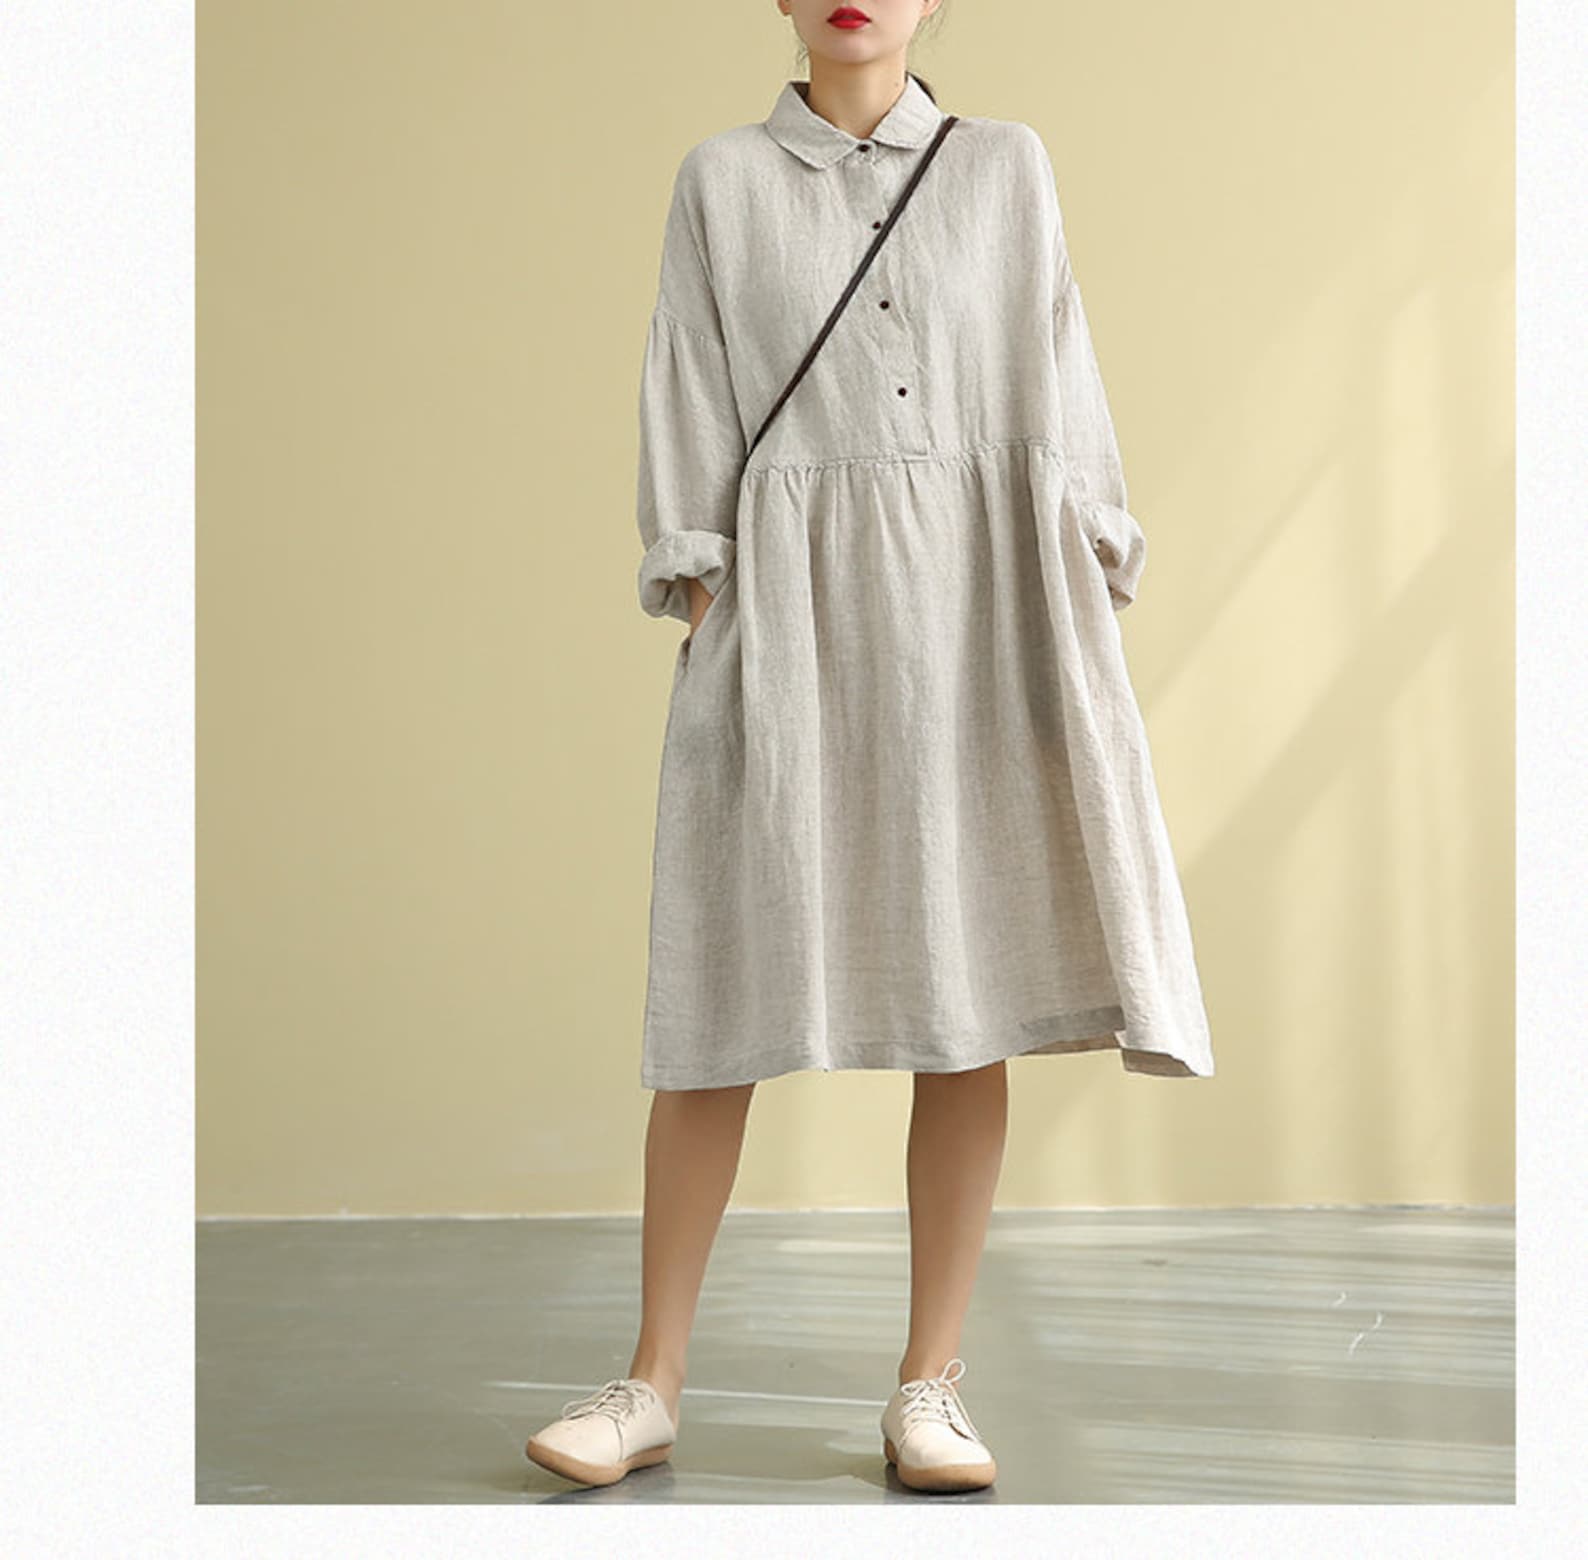 Boho Linen Long Sleeves Dress for Women Linen Midi Shirt Dress - Etsy